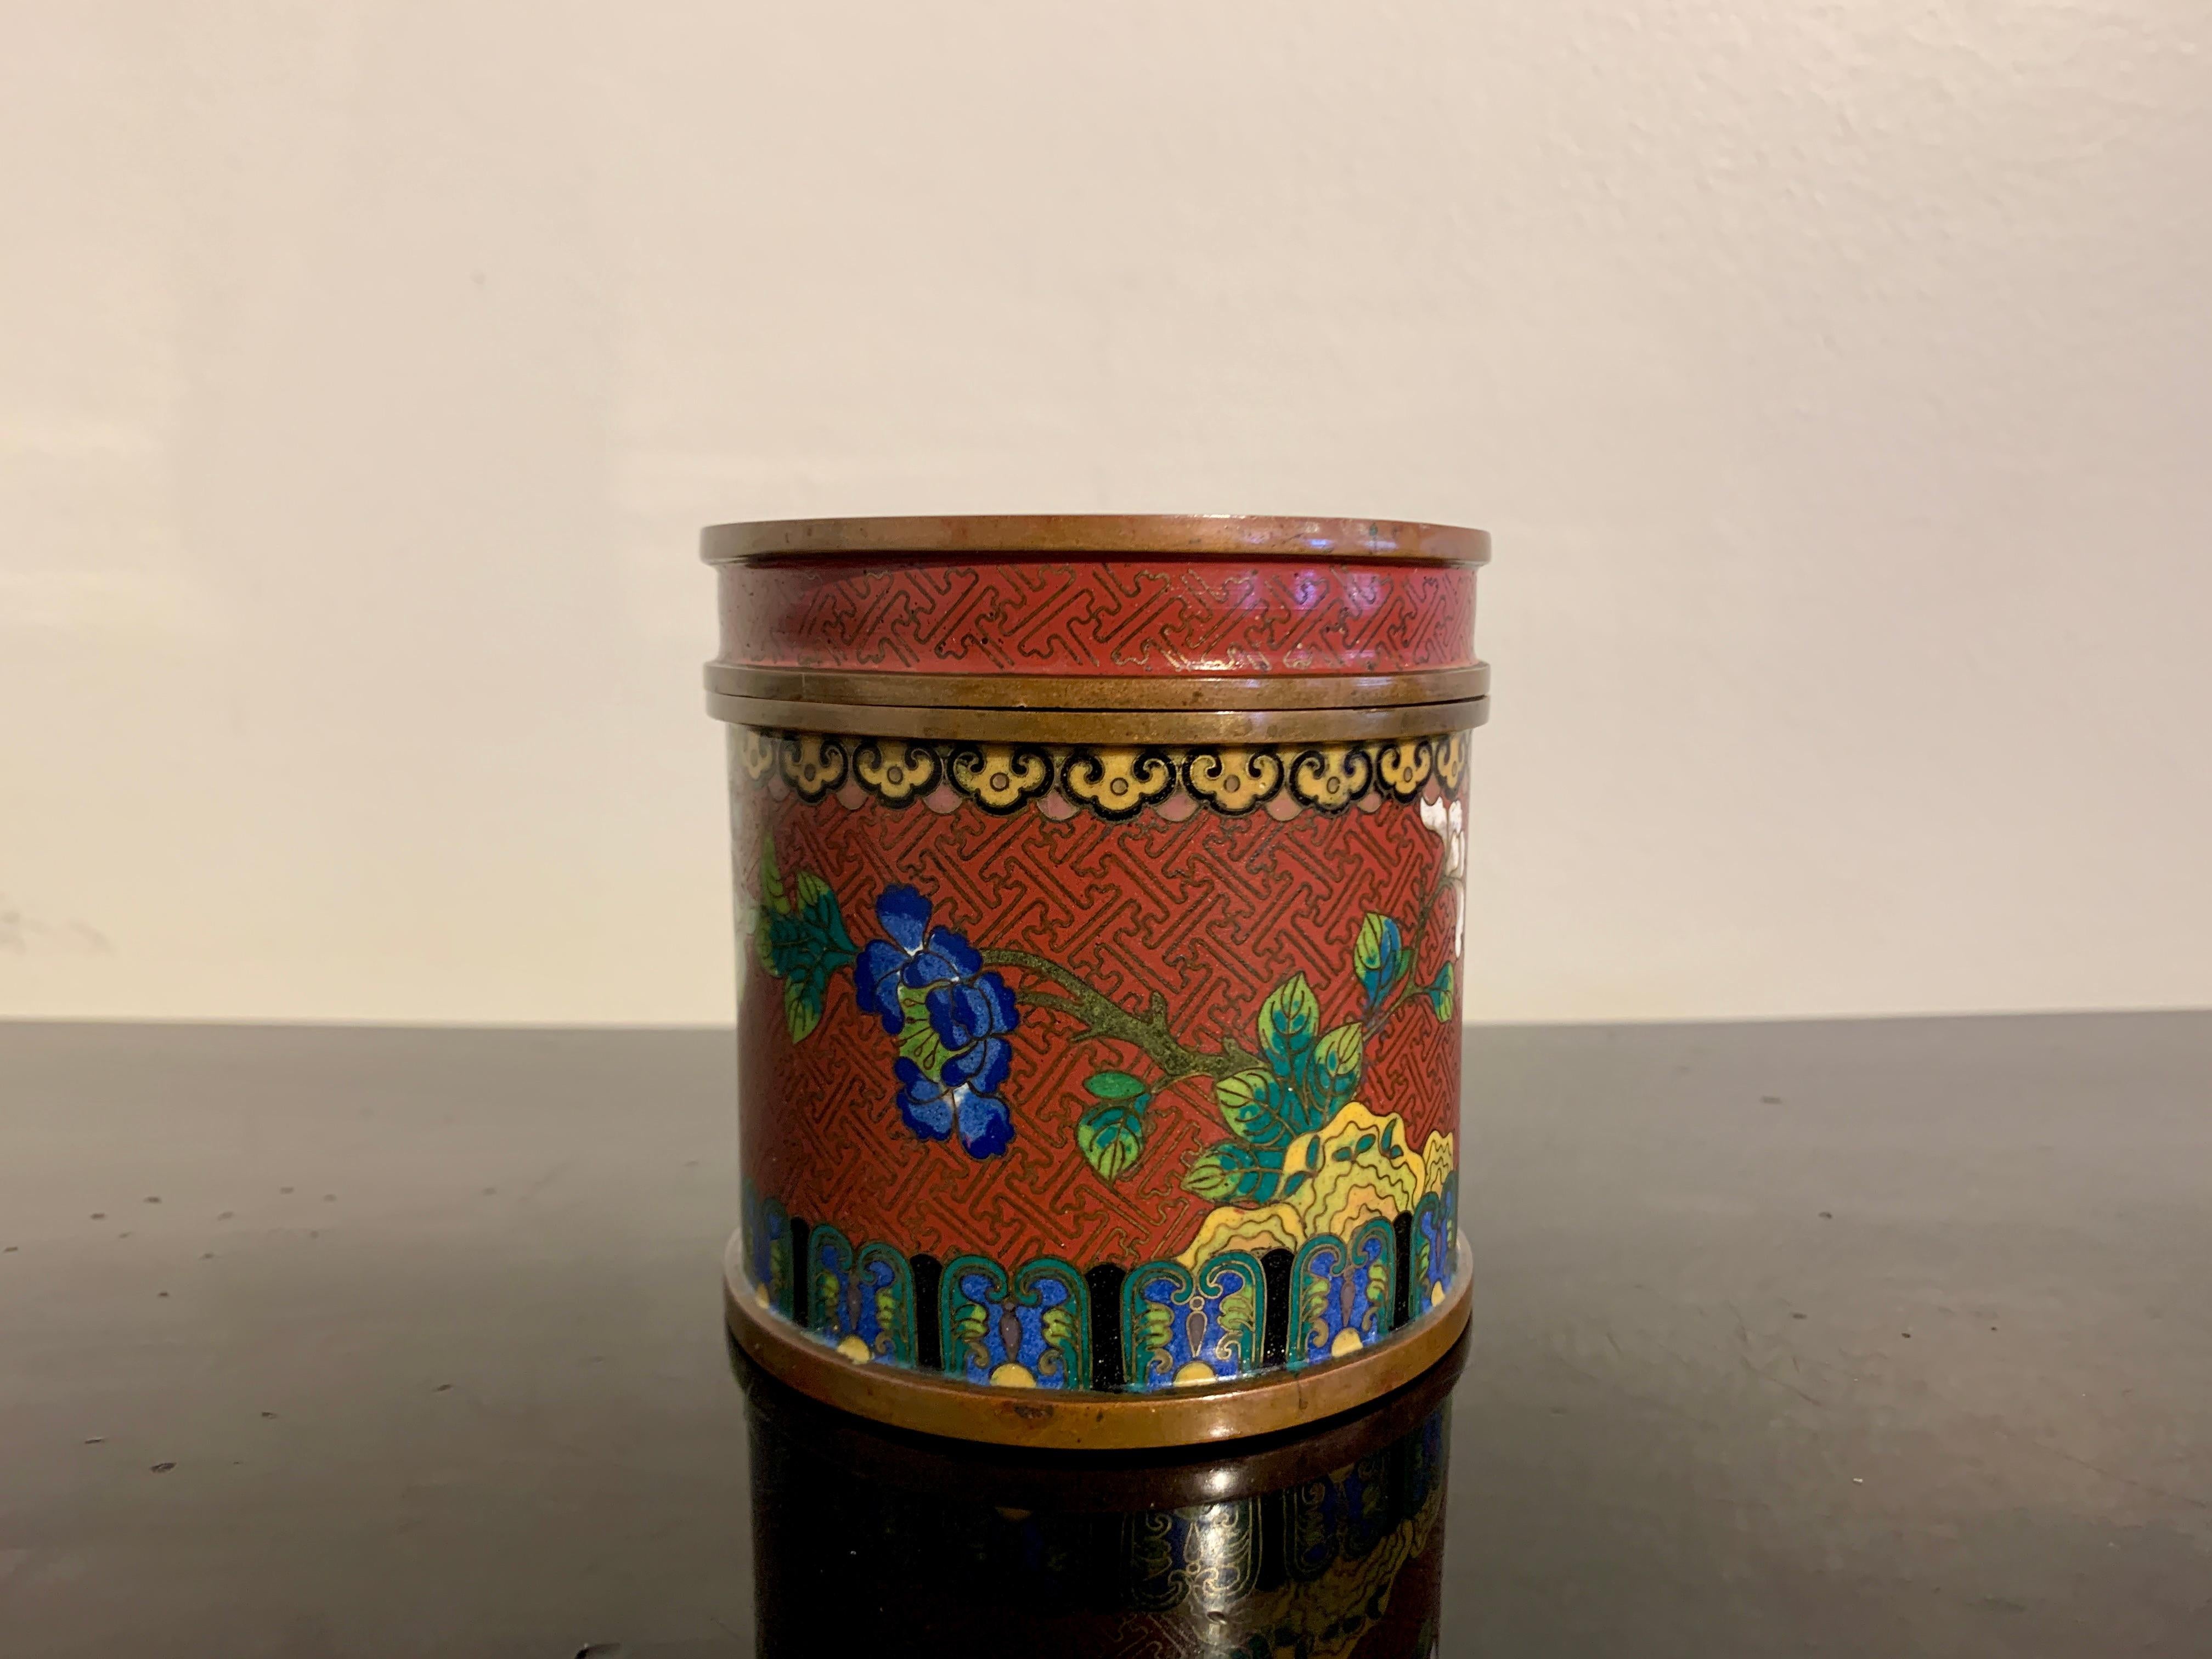 Eine reizvolle antike chinesische zylindrische Cloisonné-Dose mit Deckel von Lao Tian Li, späte Qing-Dynastie, um 1900, China.

Die Dose hat eine zylindrische Form und ist über und über mit Cloisonné-Emaille in den Farben Rot, Blau, Grün, Weiß und